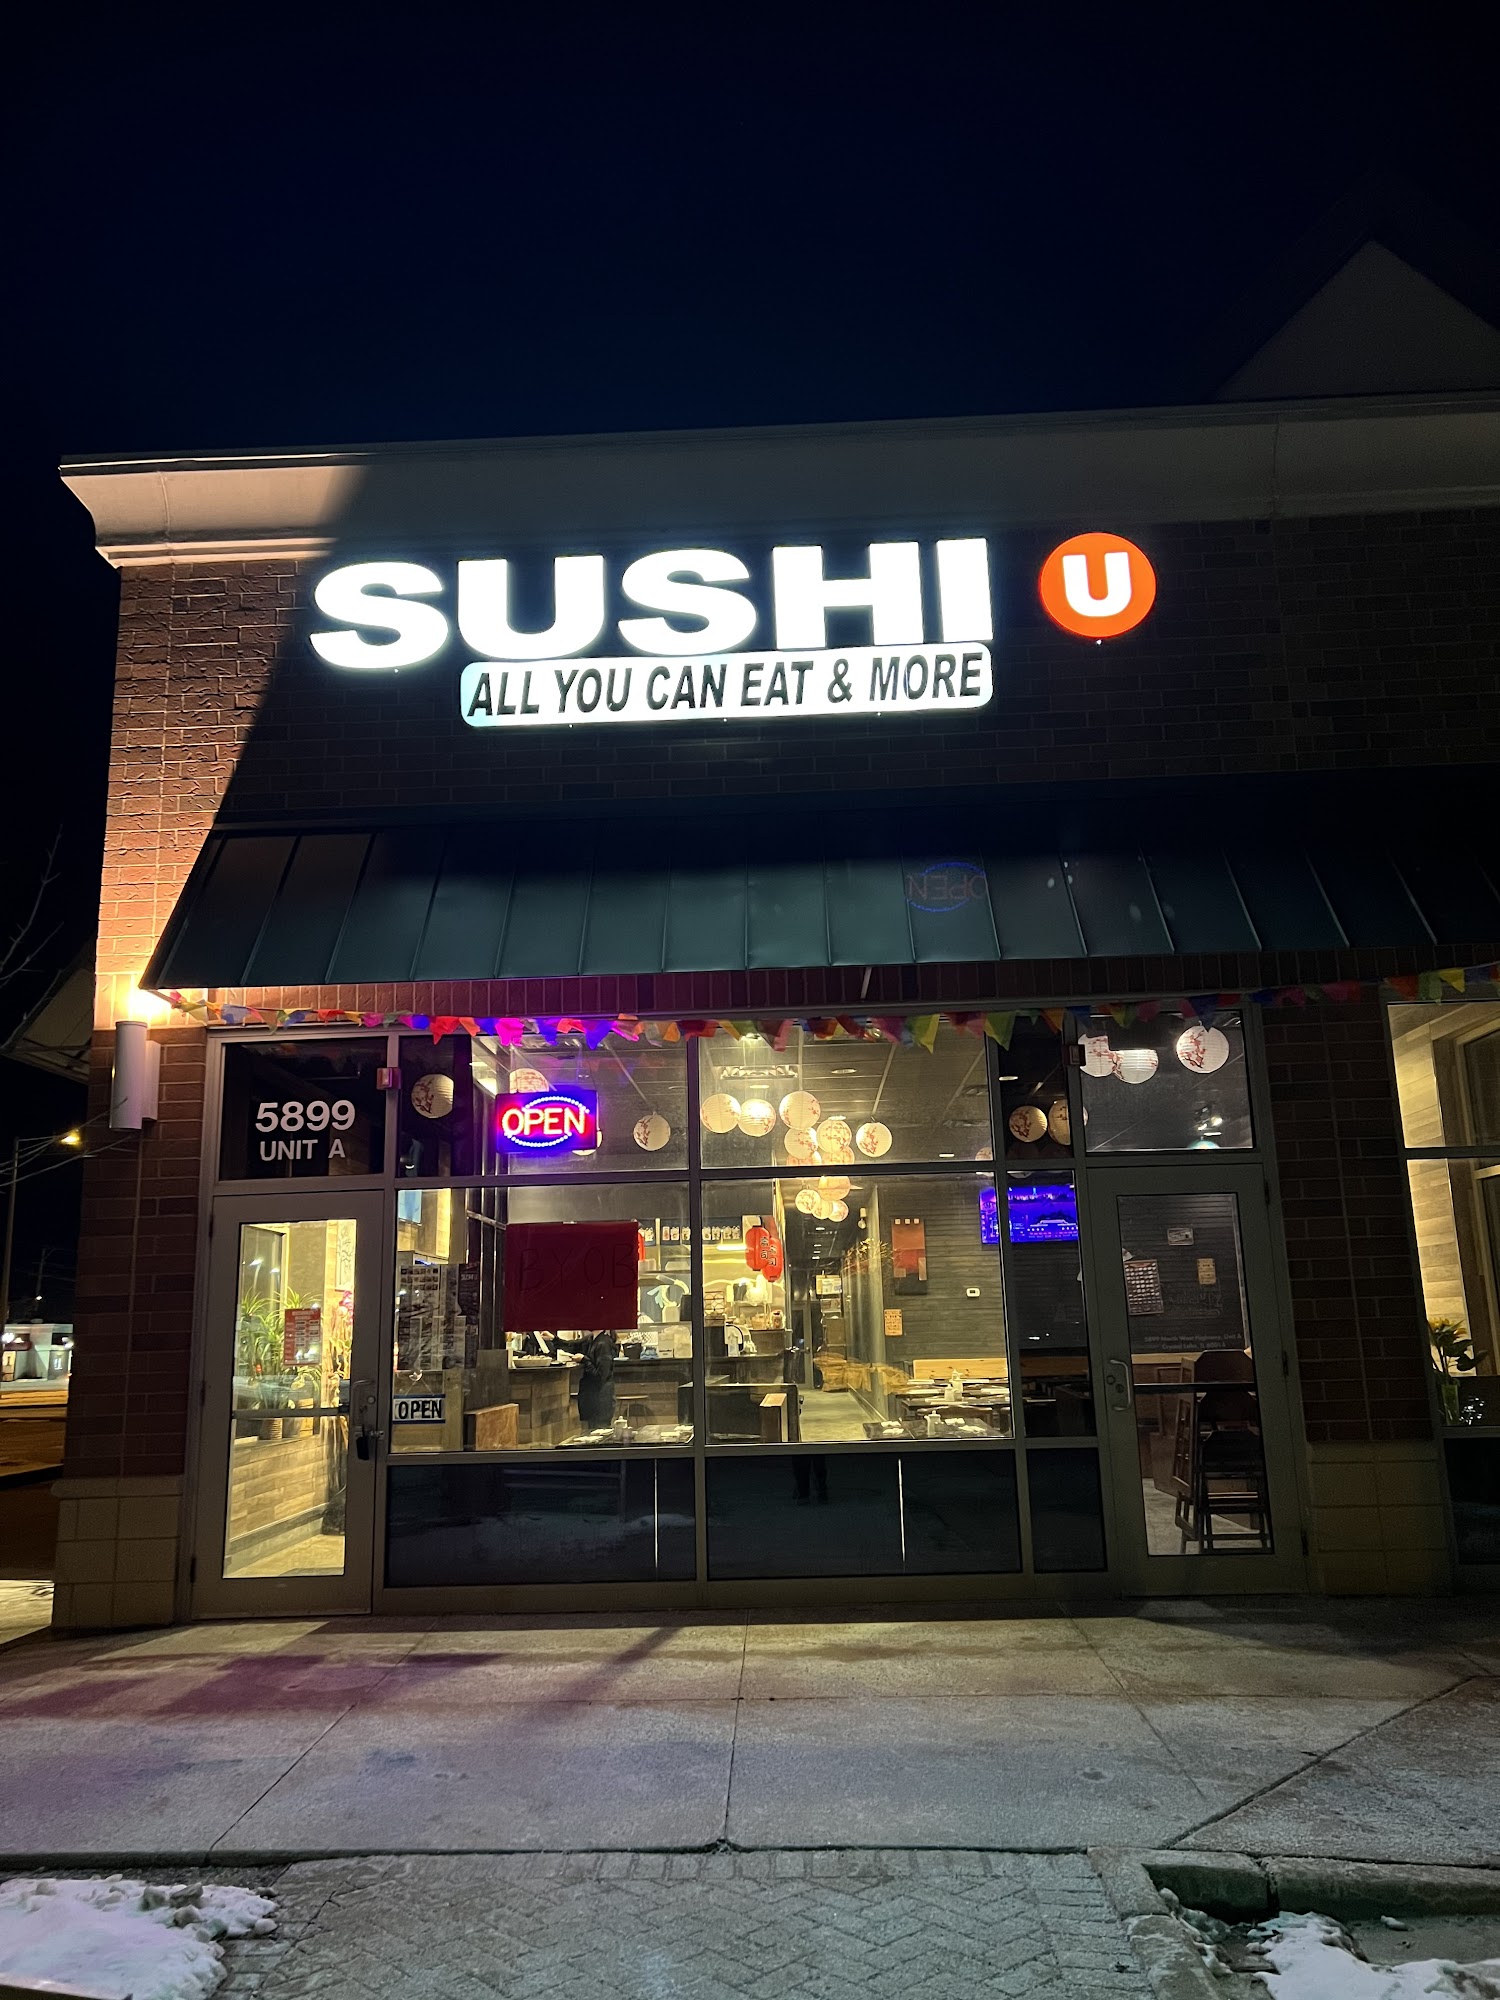 Sushi U